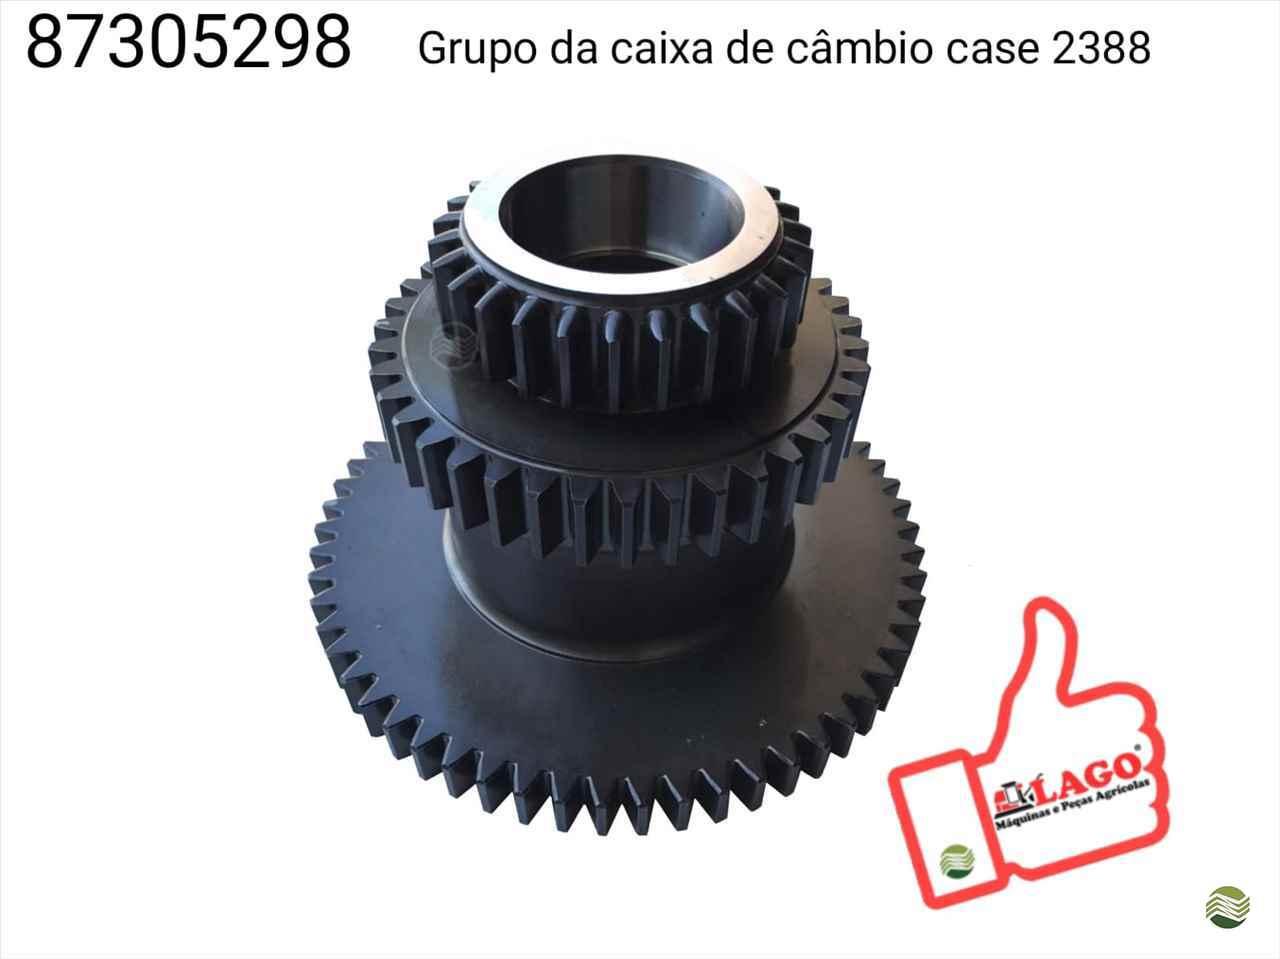 GRUPO DA CAIXA DE CAMBIO CASE 2388